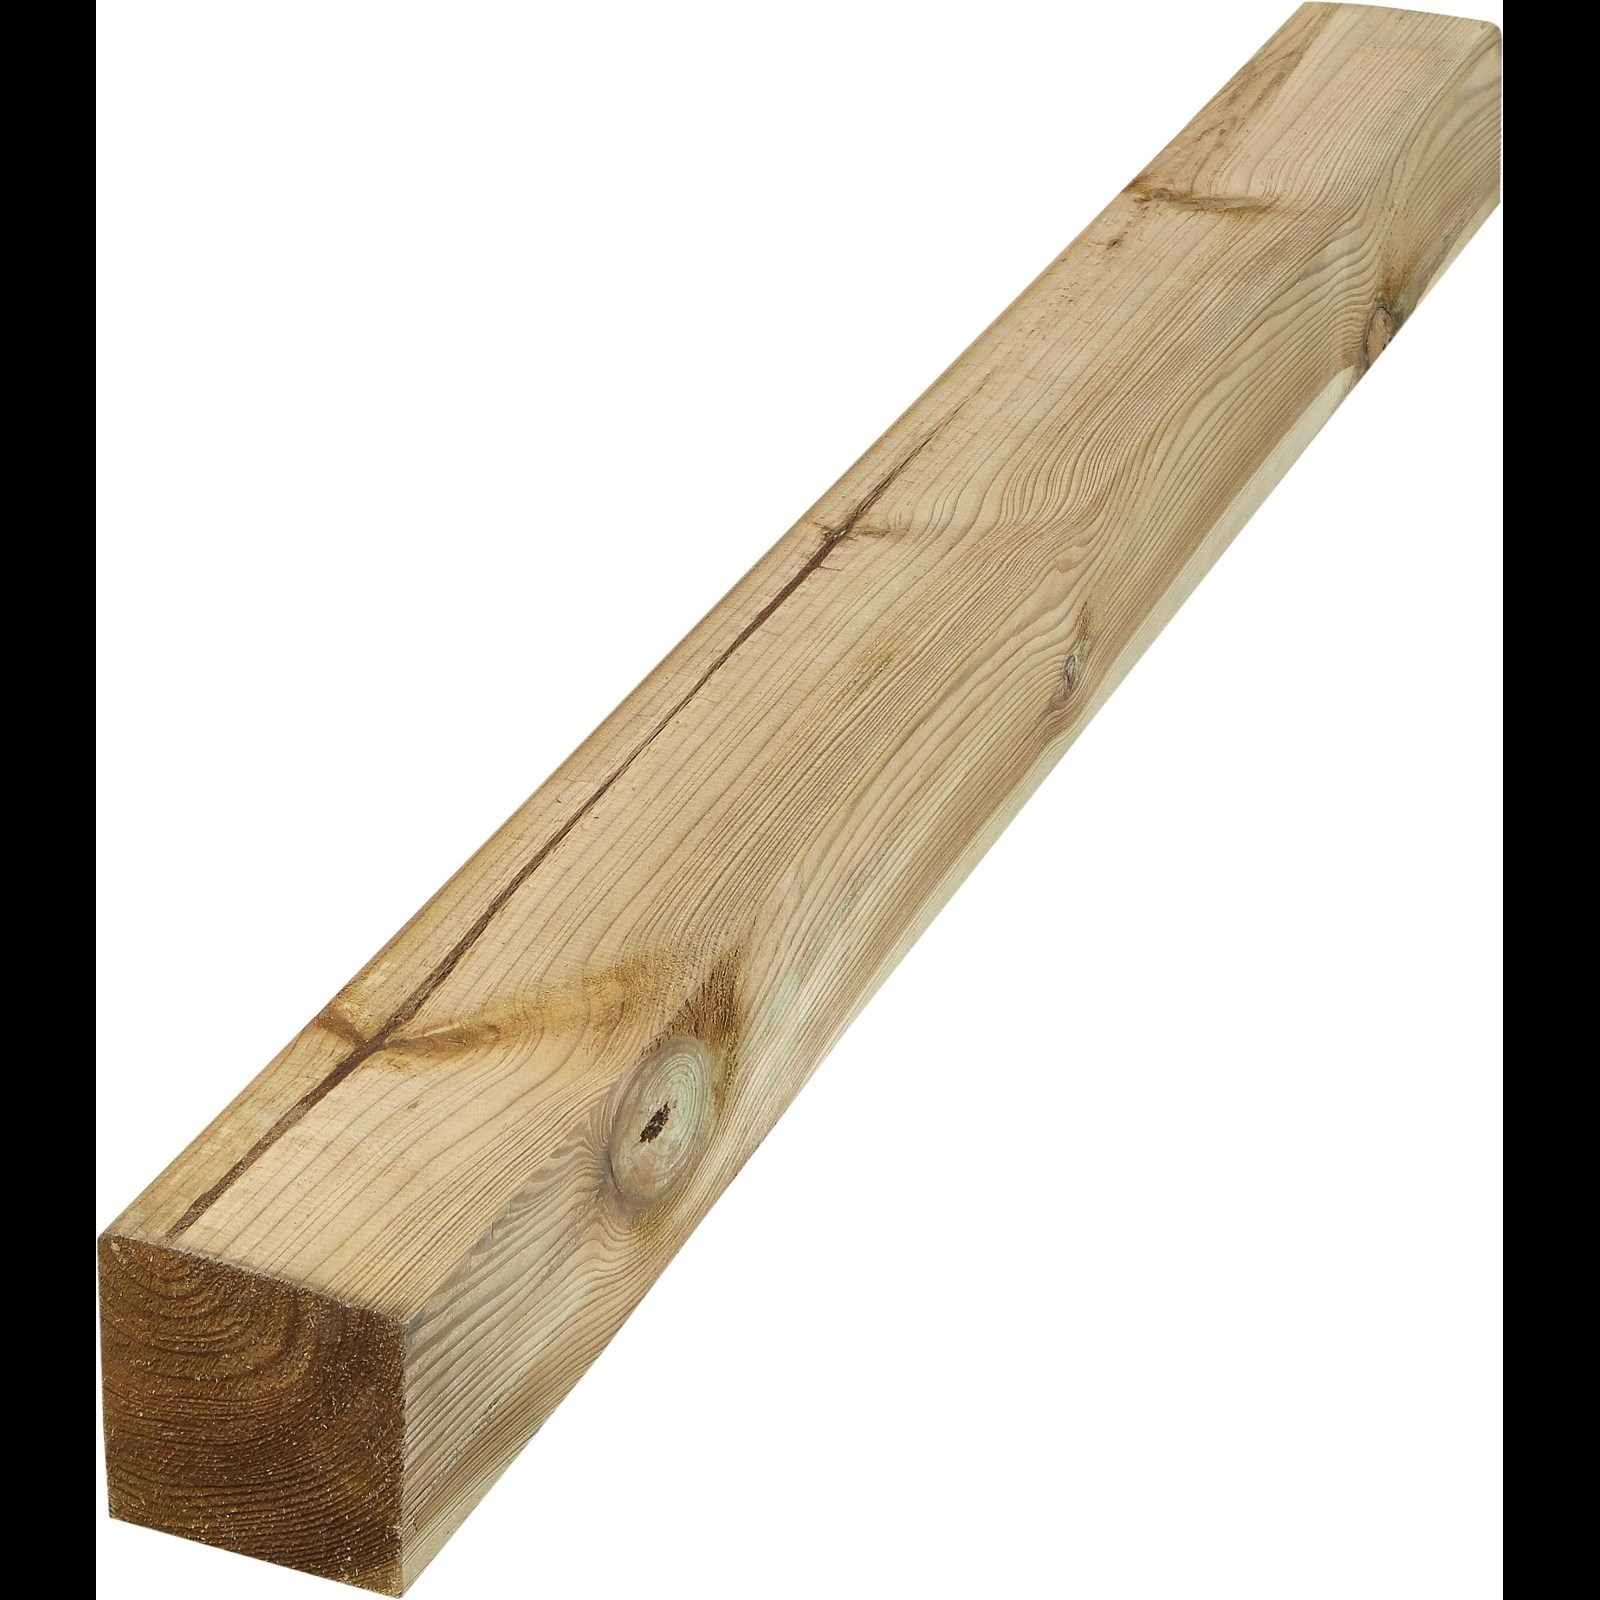 Piquet d' Ancrage carré 12x12x75 cm pour la fixation de structures en bois  (Pack 4)